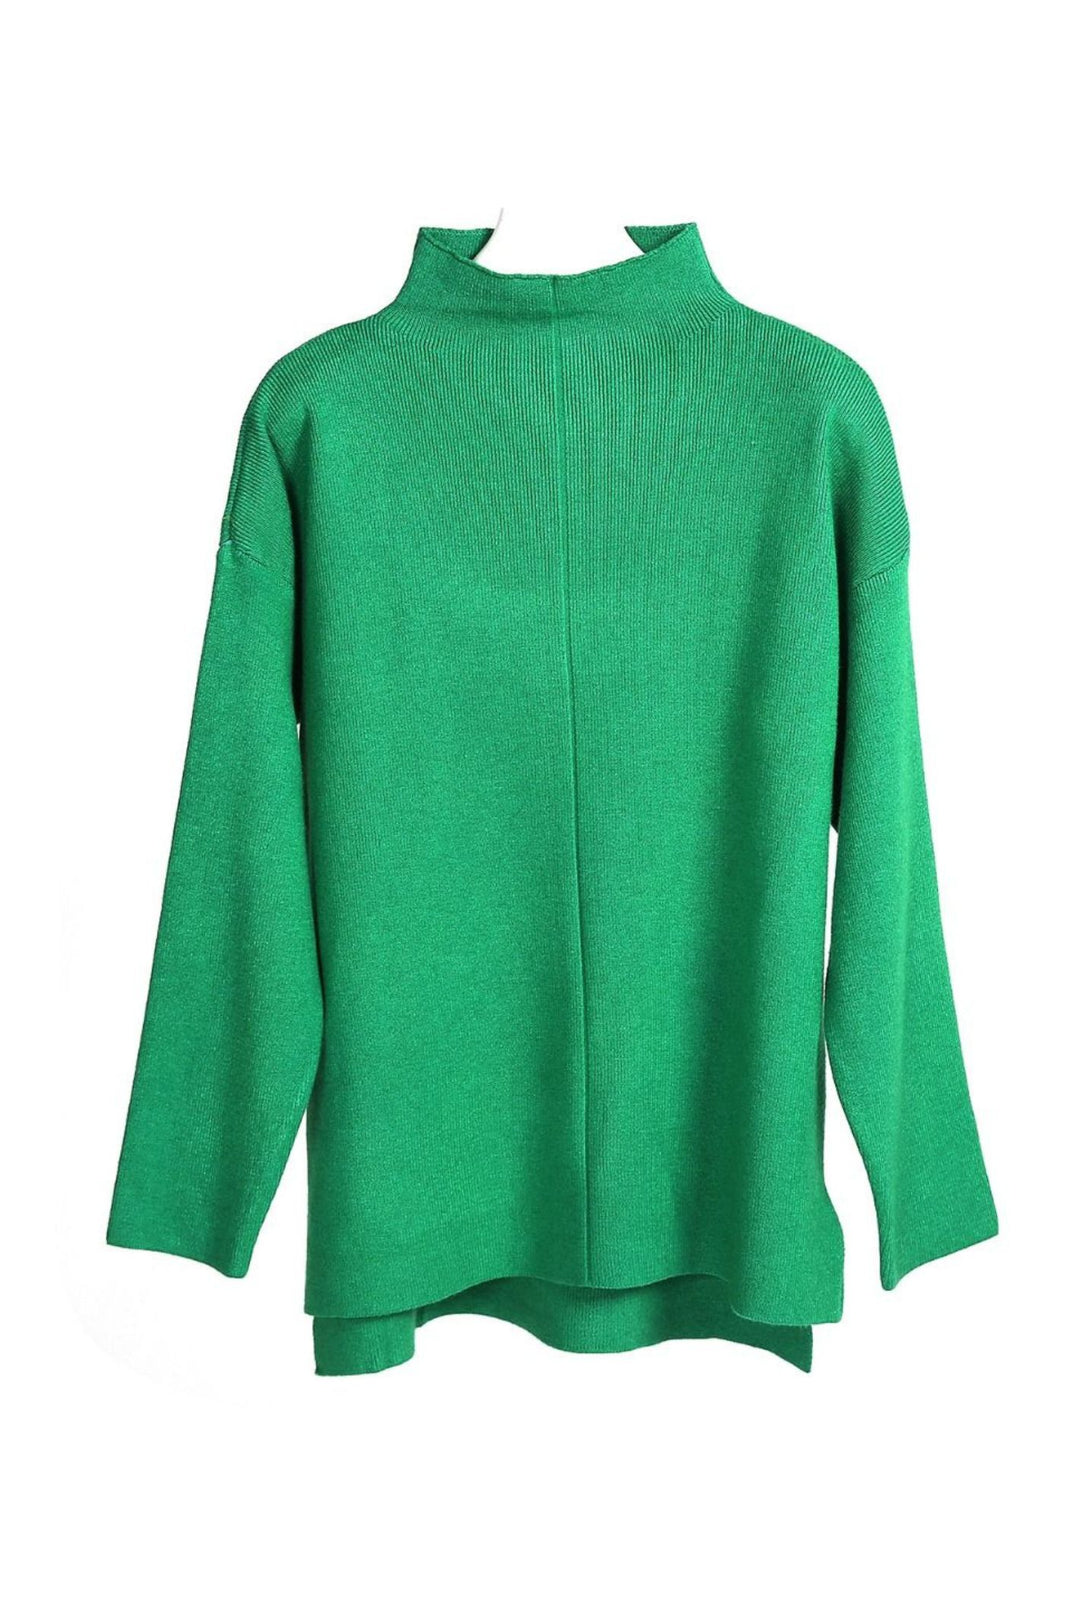 Green Super Soft Fine Rib Knit Loose Fit Jumper